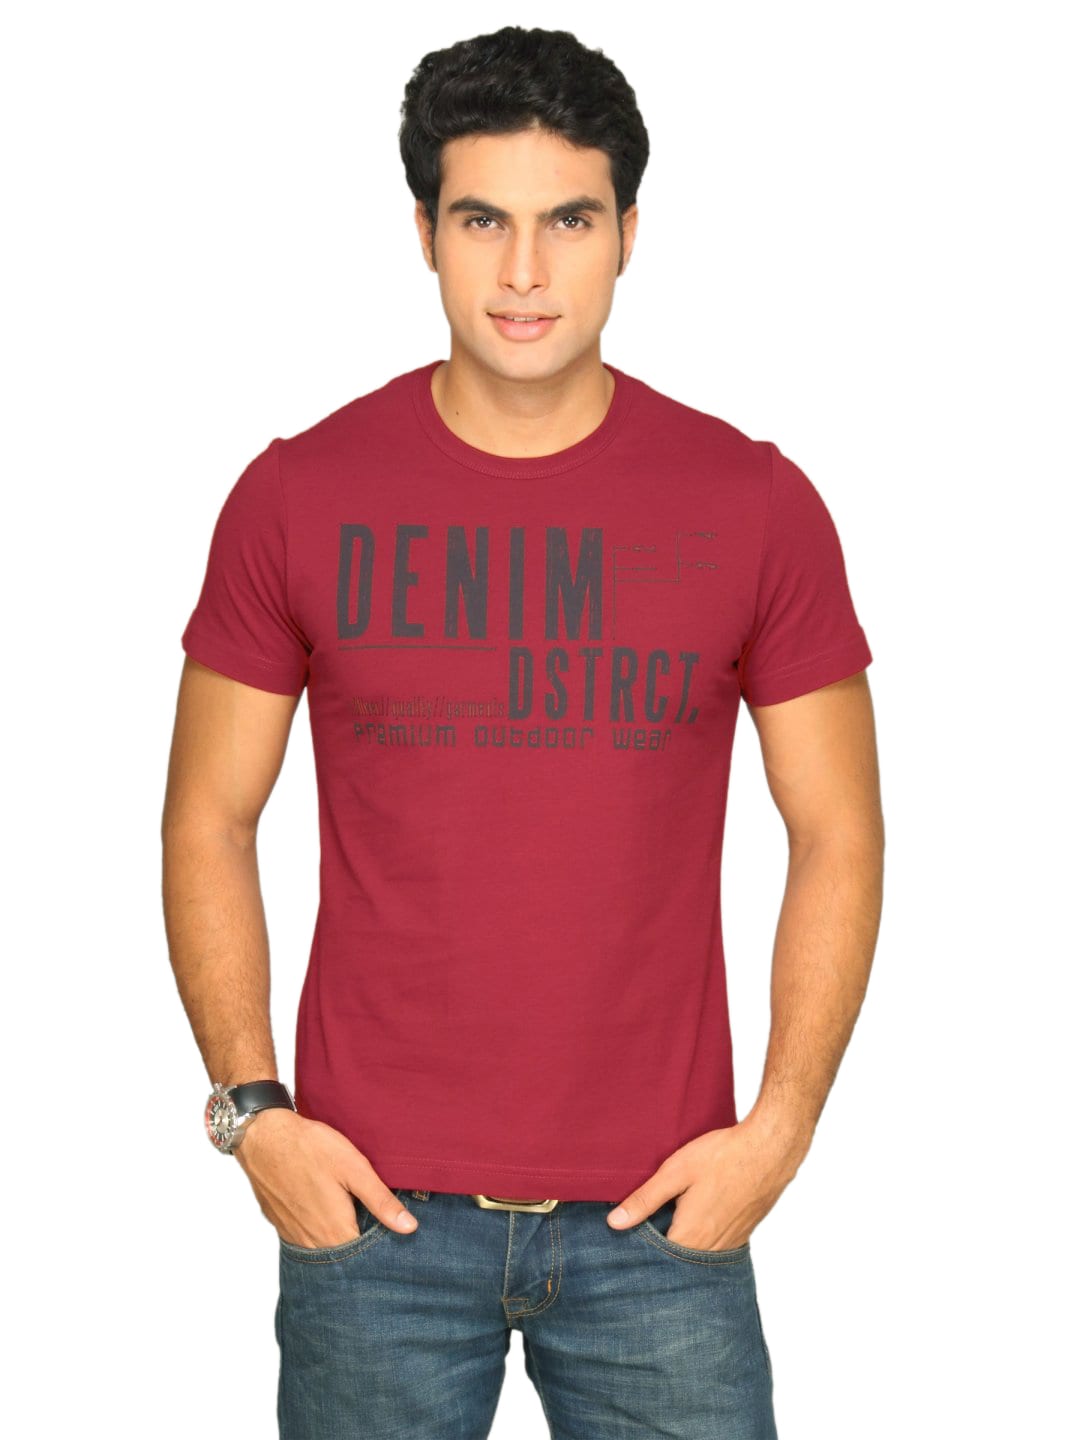 s.Oliver Men's Denim Dstrct Red T-shirt